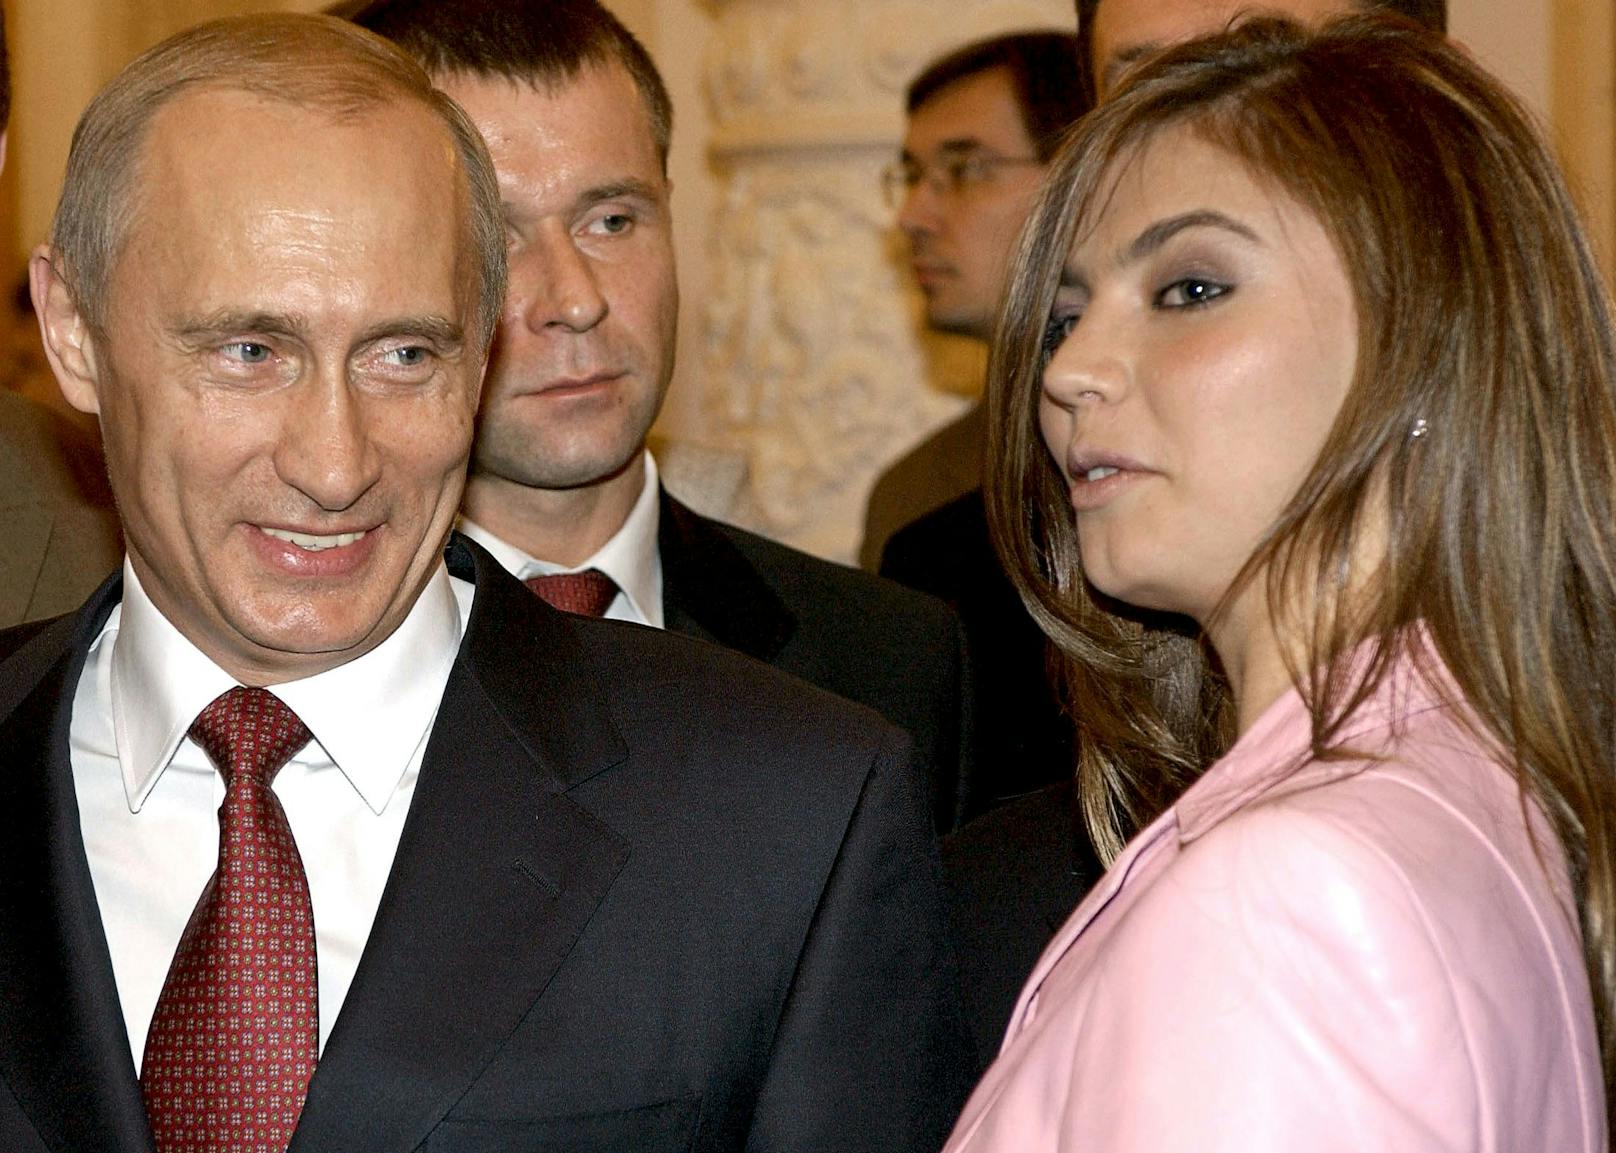 Kreml-Chef Putin und seine Geliebte Alina Kabajewa haben ein gemeinsames Kind.